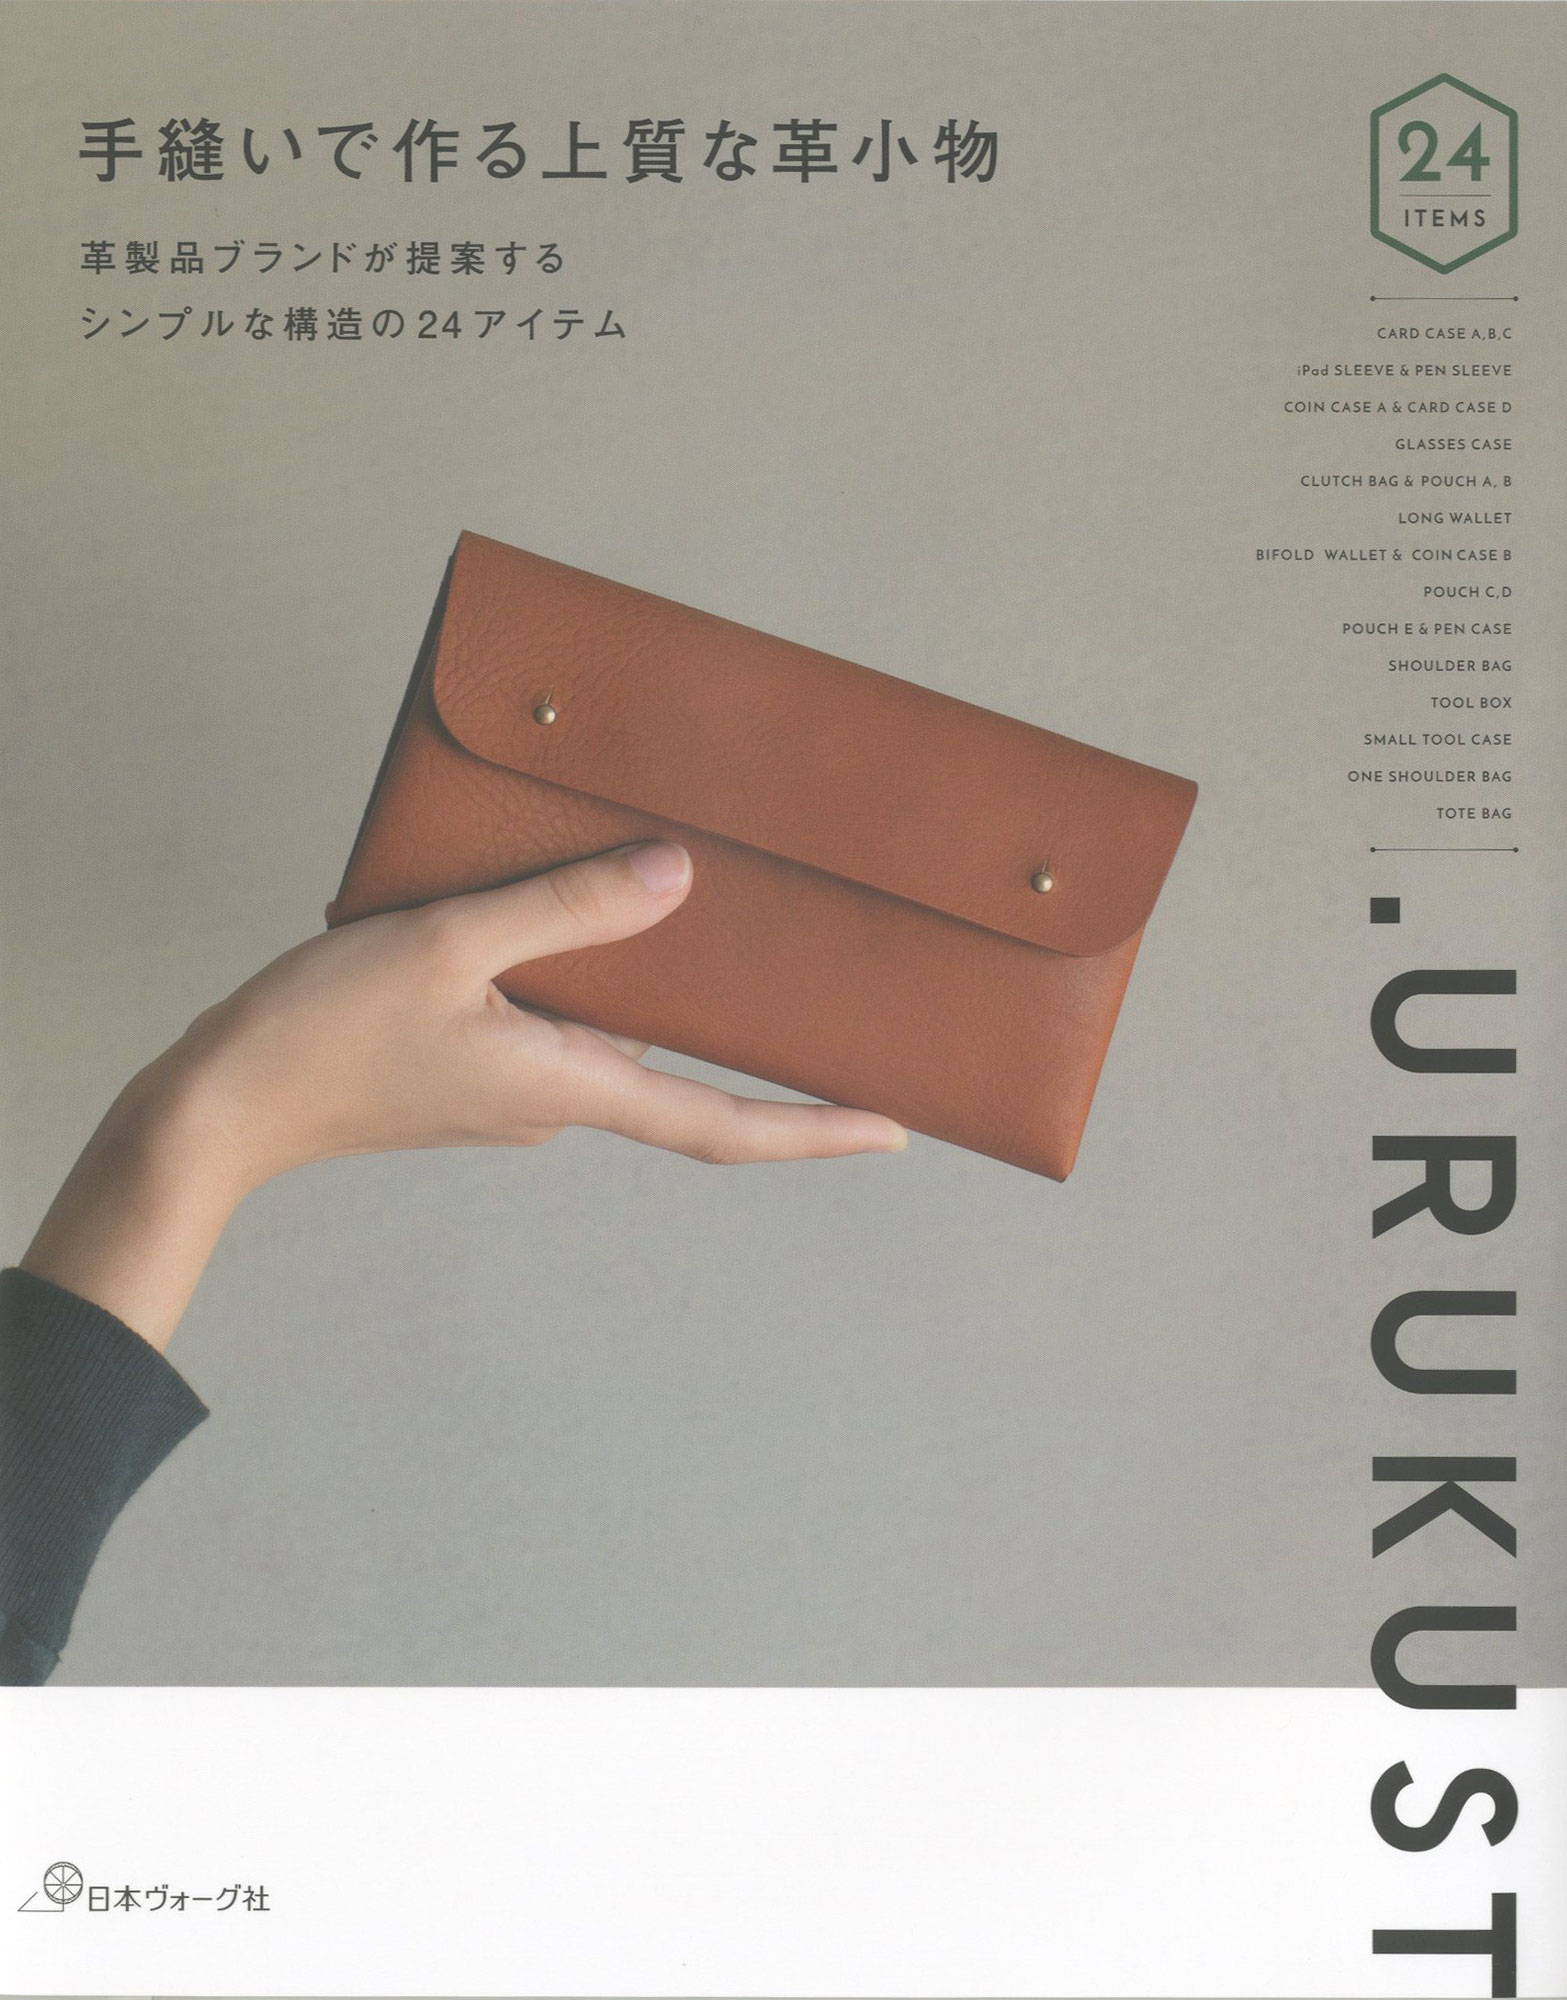 革製品ブランド Urukustが提案するシンプルな構造の24アイテムの作り方 がわかる 手縫いで作る上質な革小物 発売 株式会社日本ヴォーグ社のプレスリリース